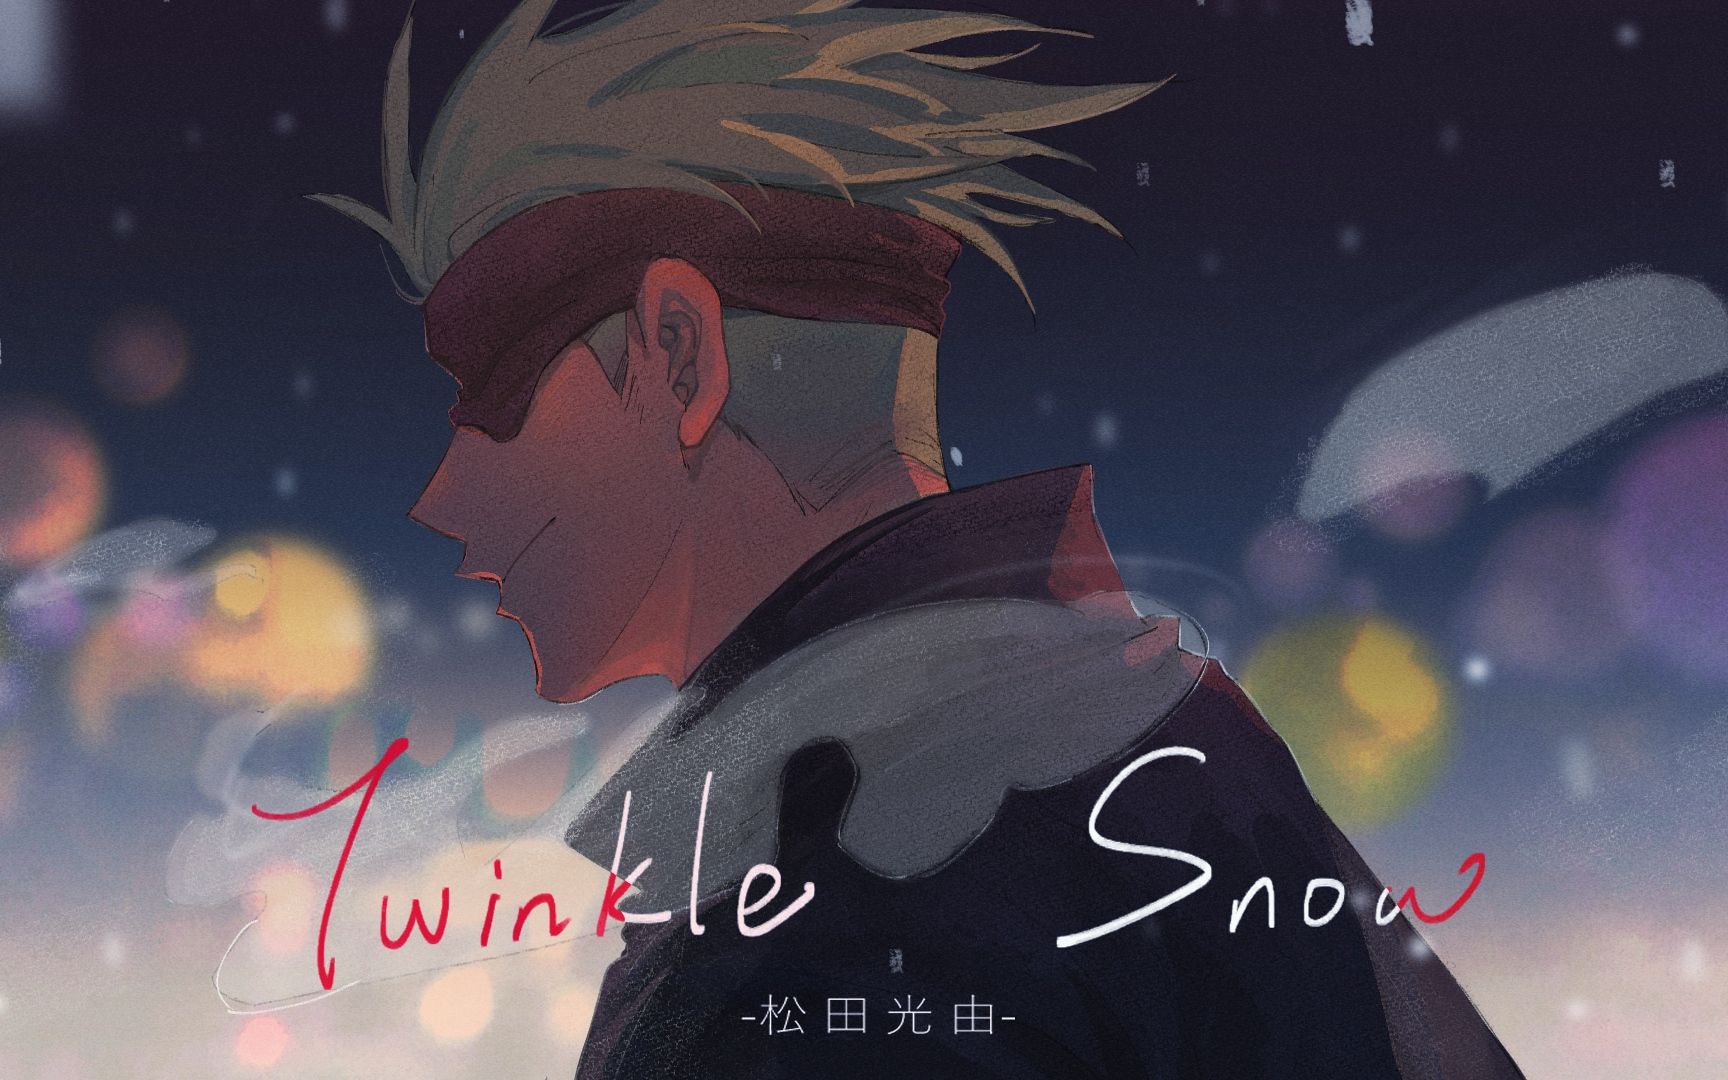 【咒术回战手书/夏五】Twinkle Snow